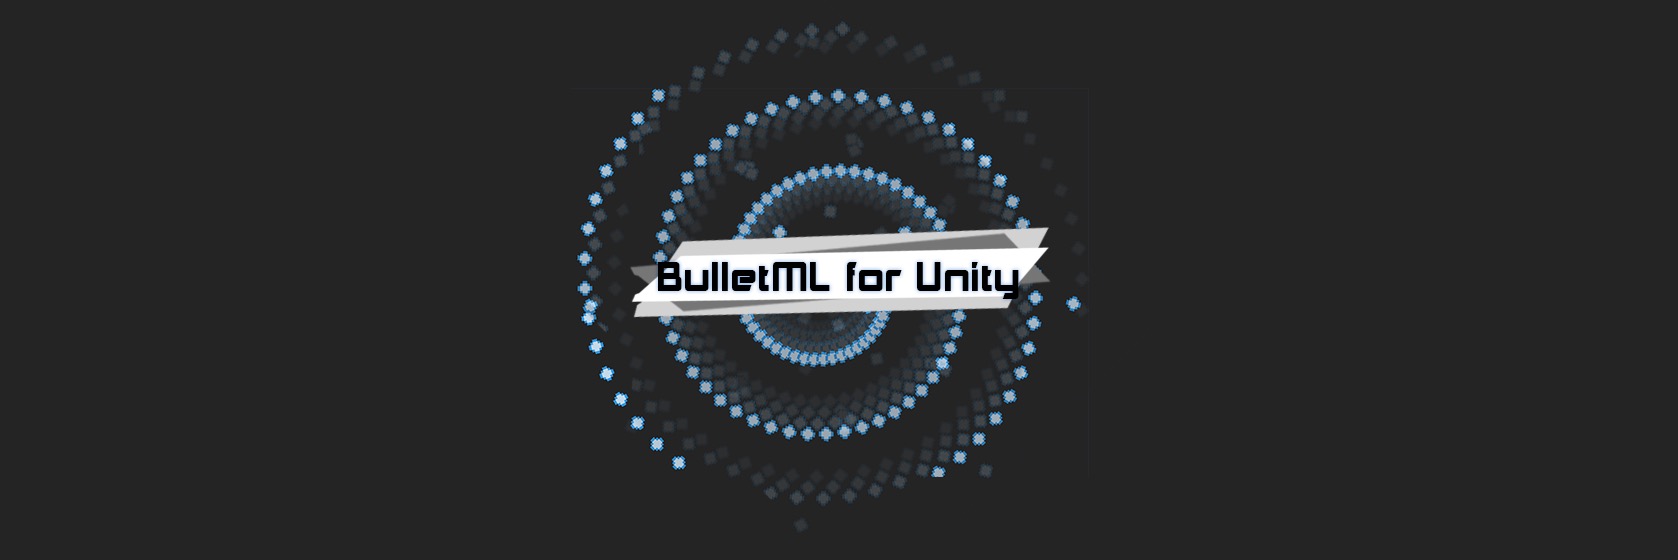 BulletML for Unity